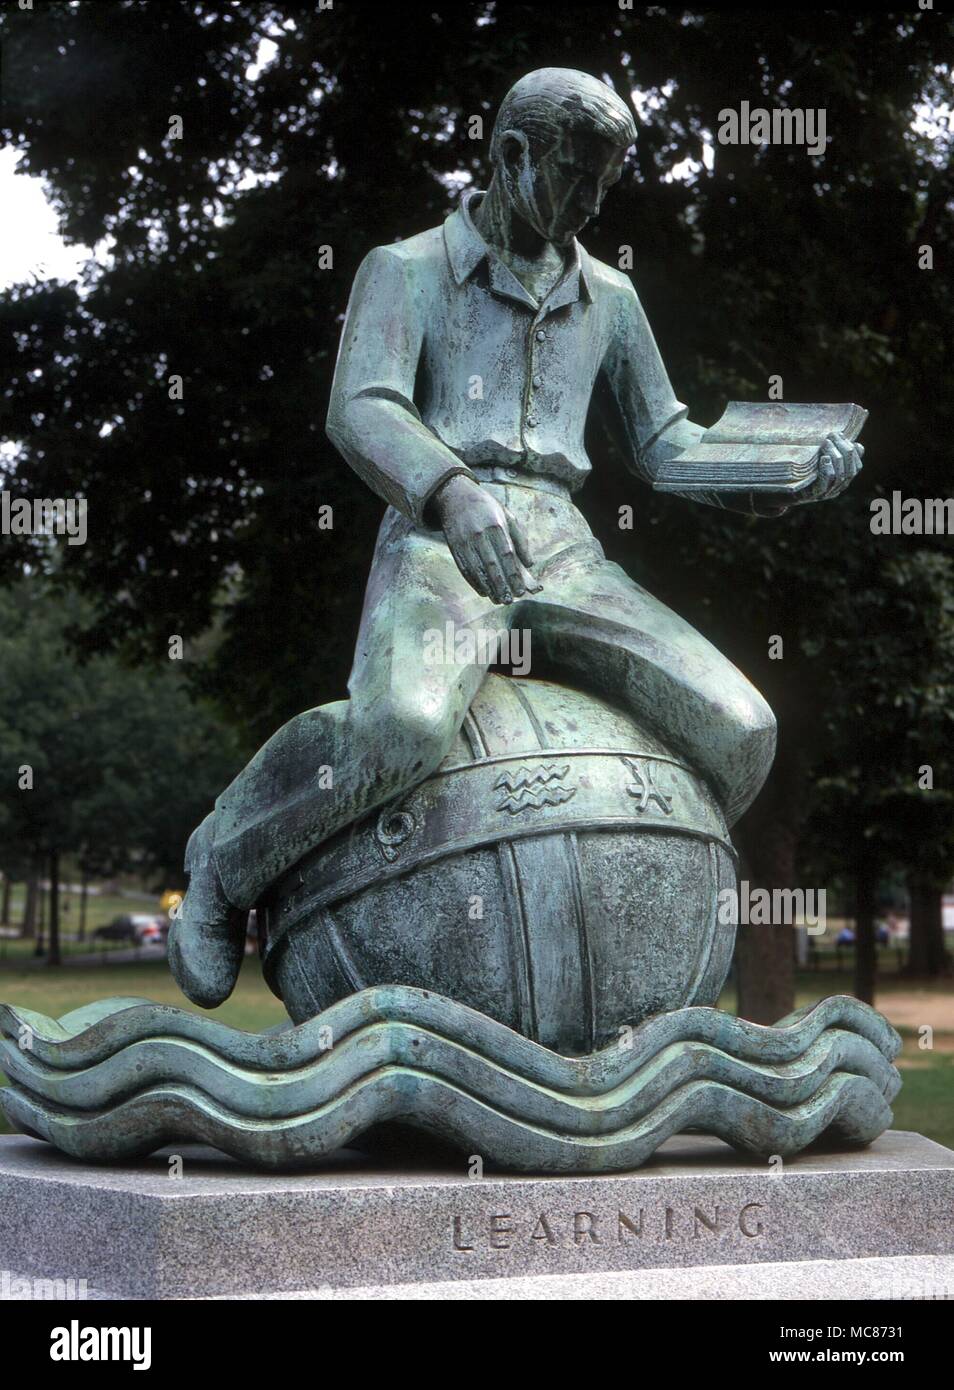 Astrologie - amerikanischen Boston. Statue auf Boston Common, die dazu bestimmt sind, repräsentieren "Lernen". Ein kleiner Junge sitzt mit einem Buch auf einem himmelsglobus, gekennzeichnet mit dem Tierkreiszeichen Siegel. Boston, Massachussetts Stockfoto